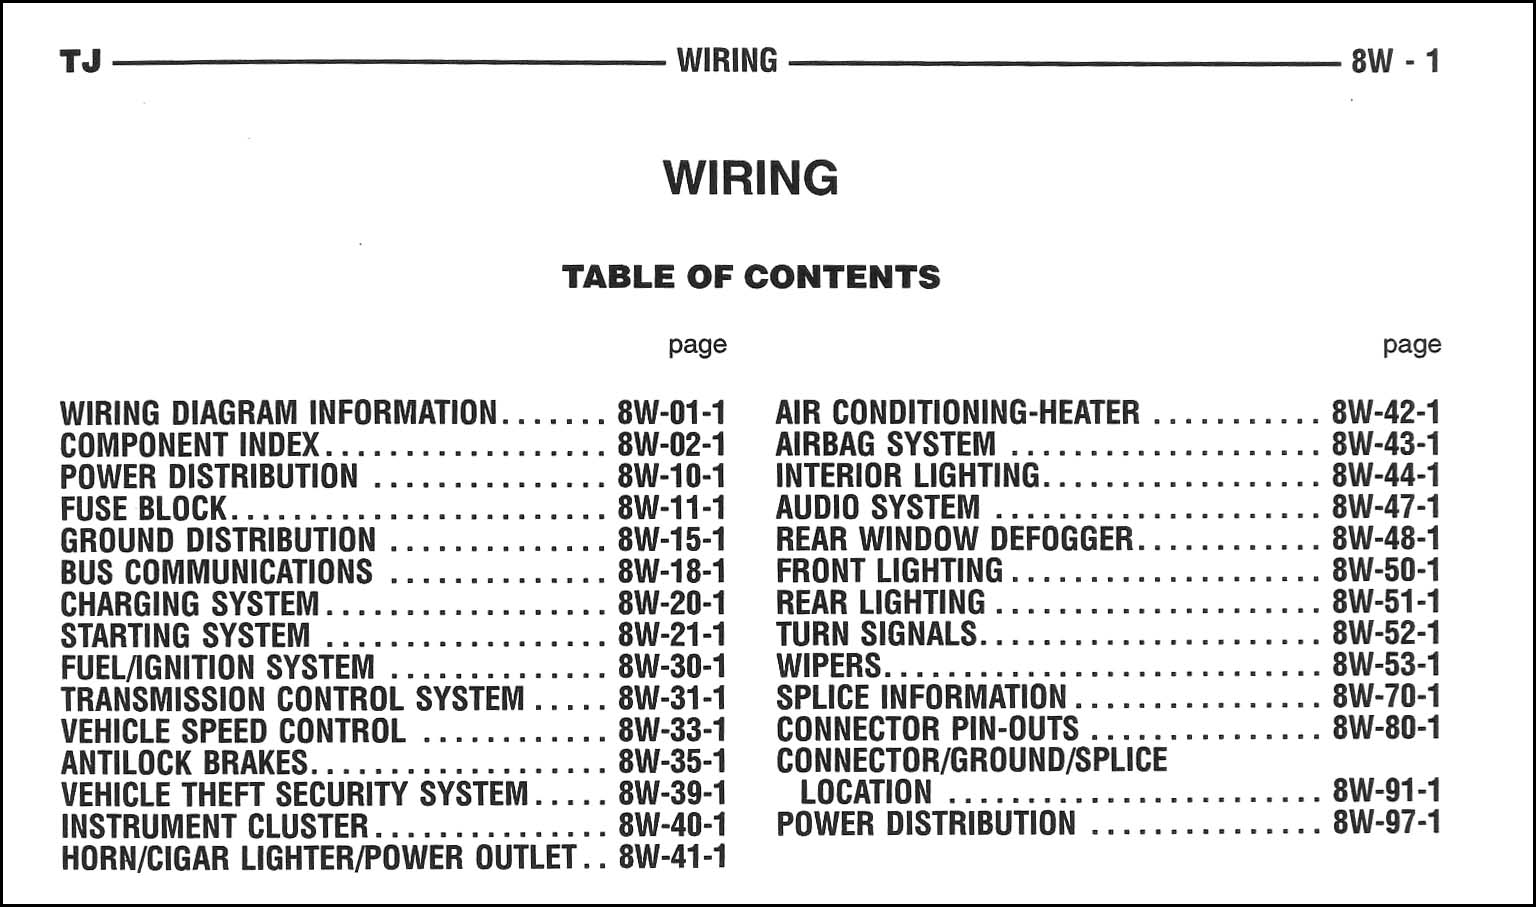 2005 Jeep Wrangler Wiring Diagram Manual Original  2005 Jeep Wrangler Tj Radio Wiring Diagram    Faxon Auto Literature